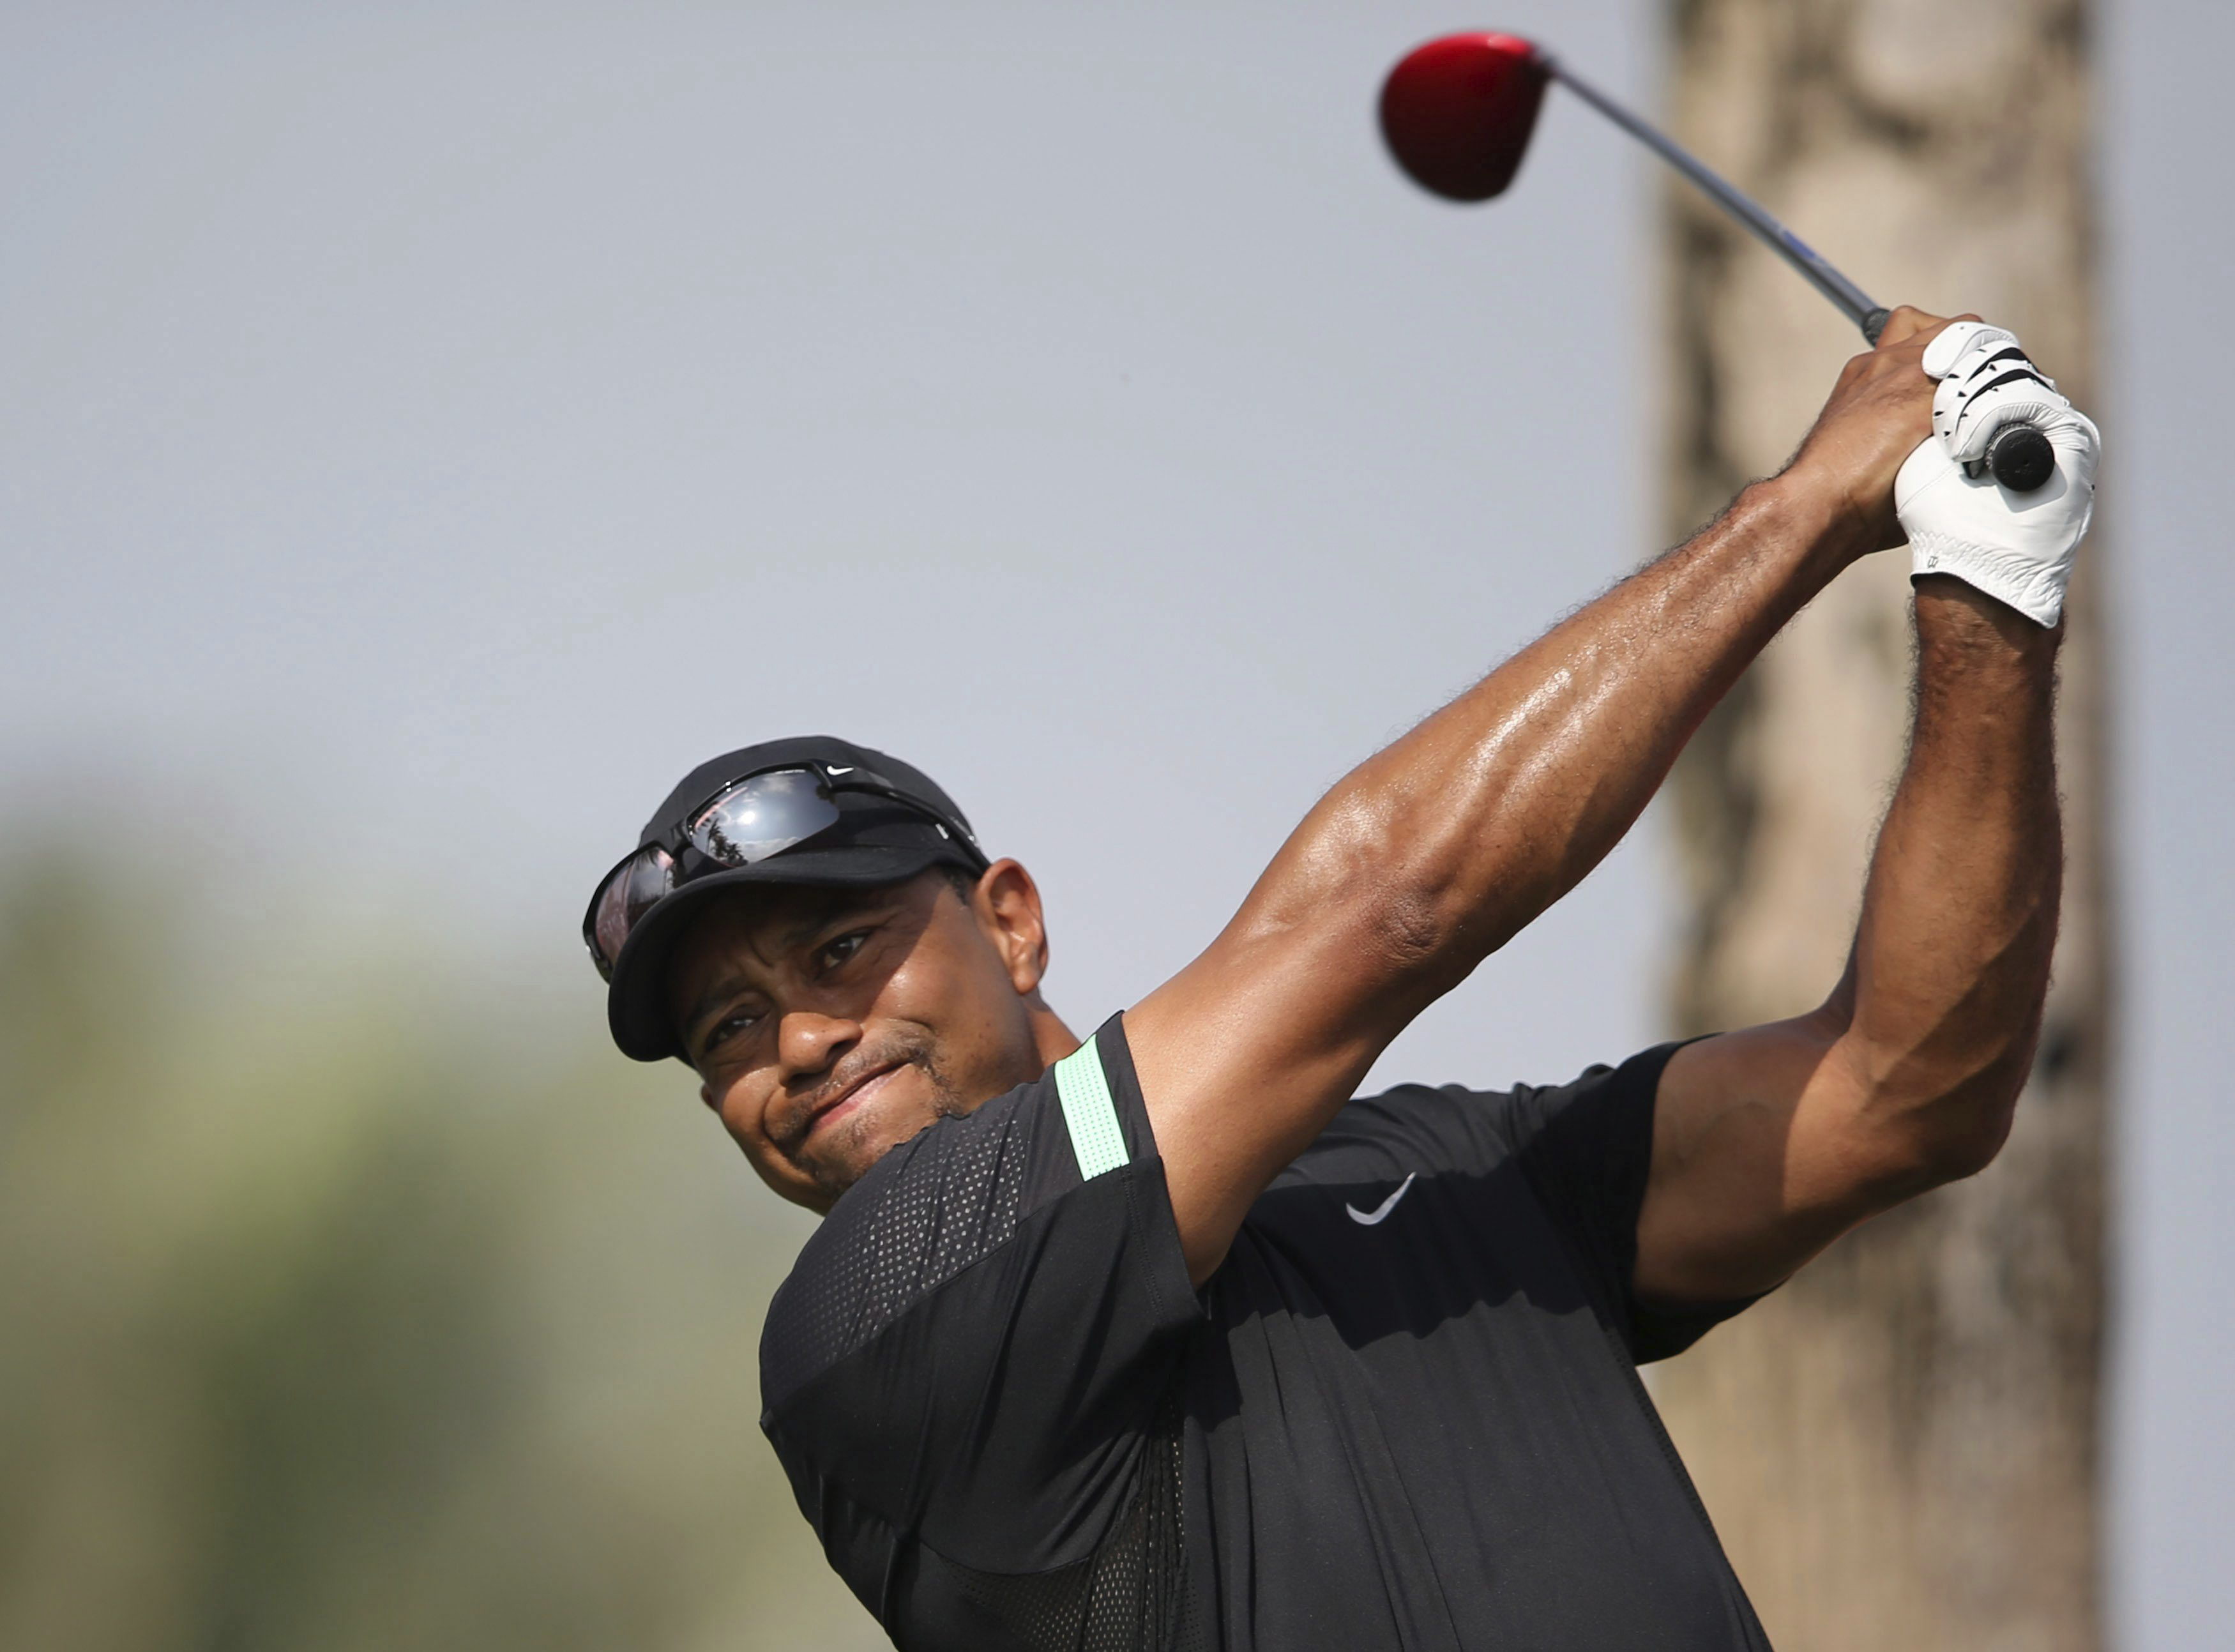 Tiger Woods ganó en 2012 casi 200 veces lo que cobra Obama al año